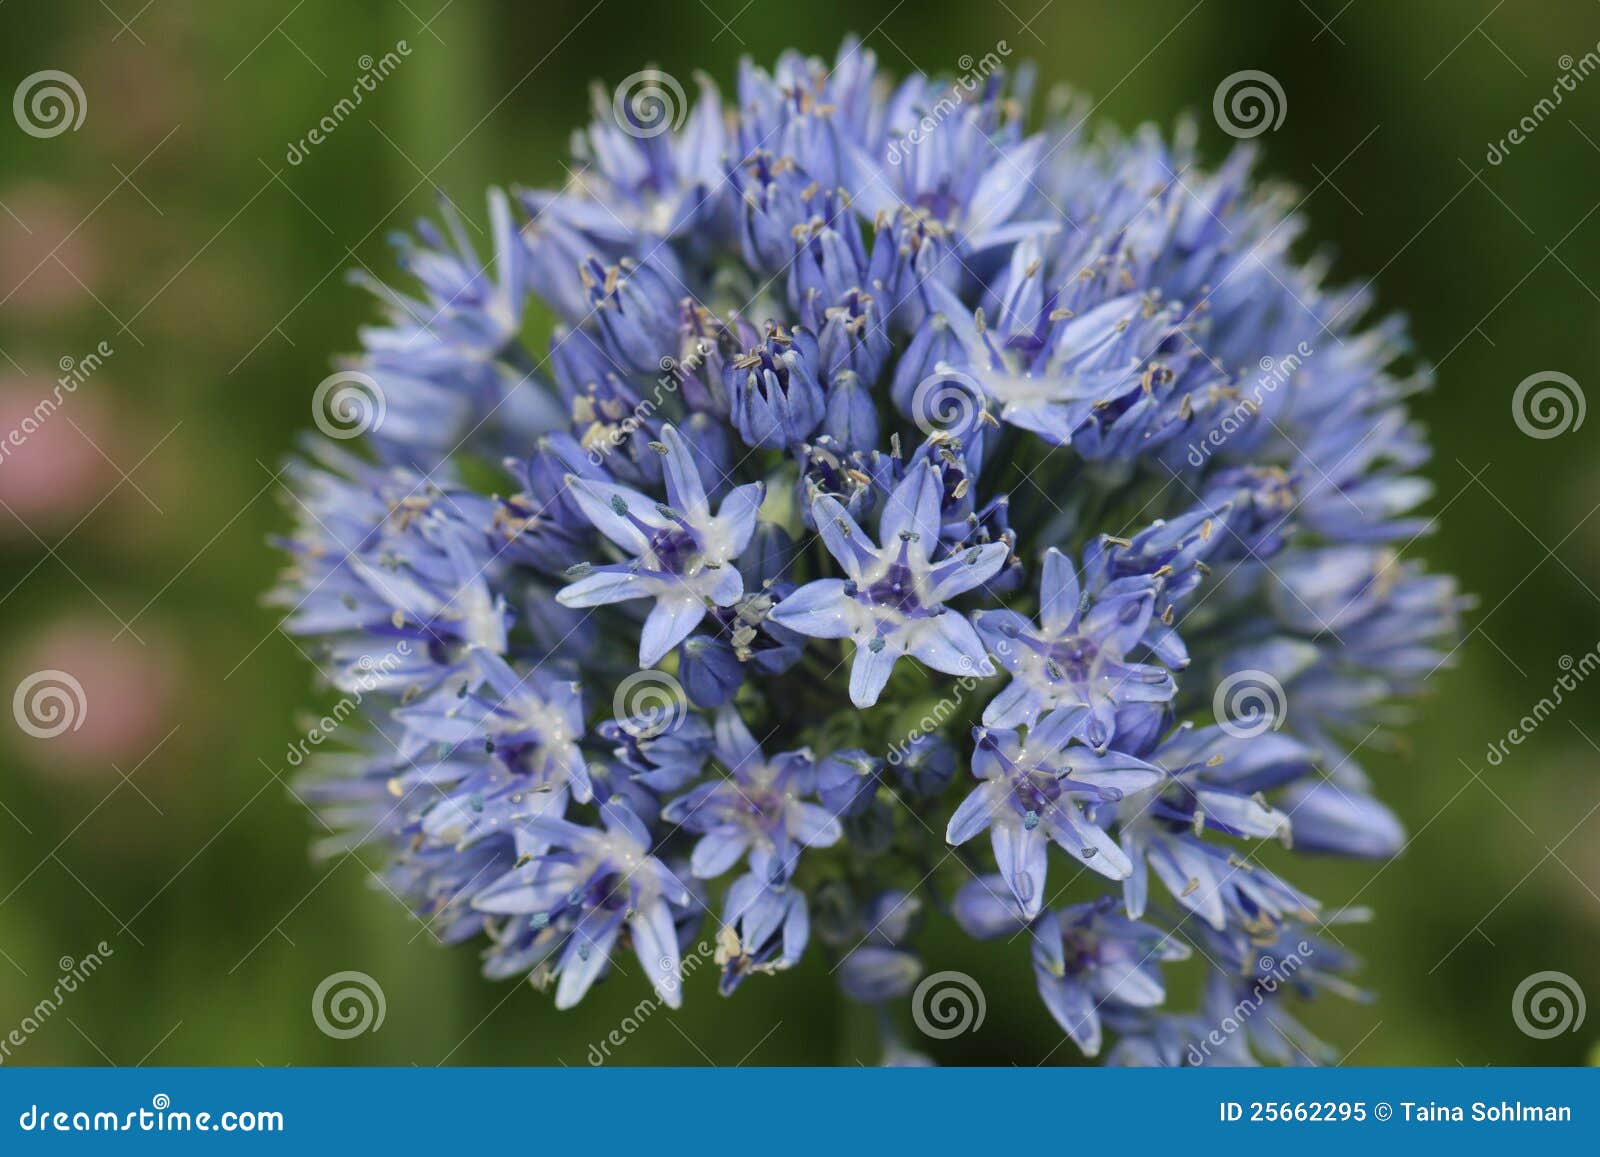 blue allium caeruleum flowers